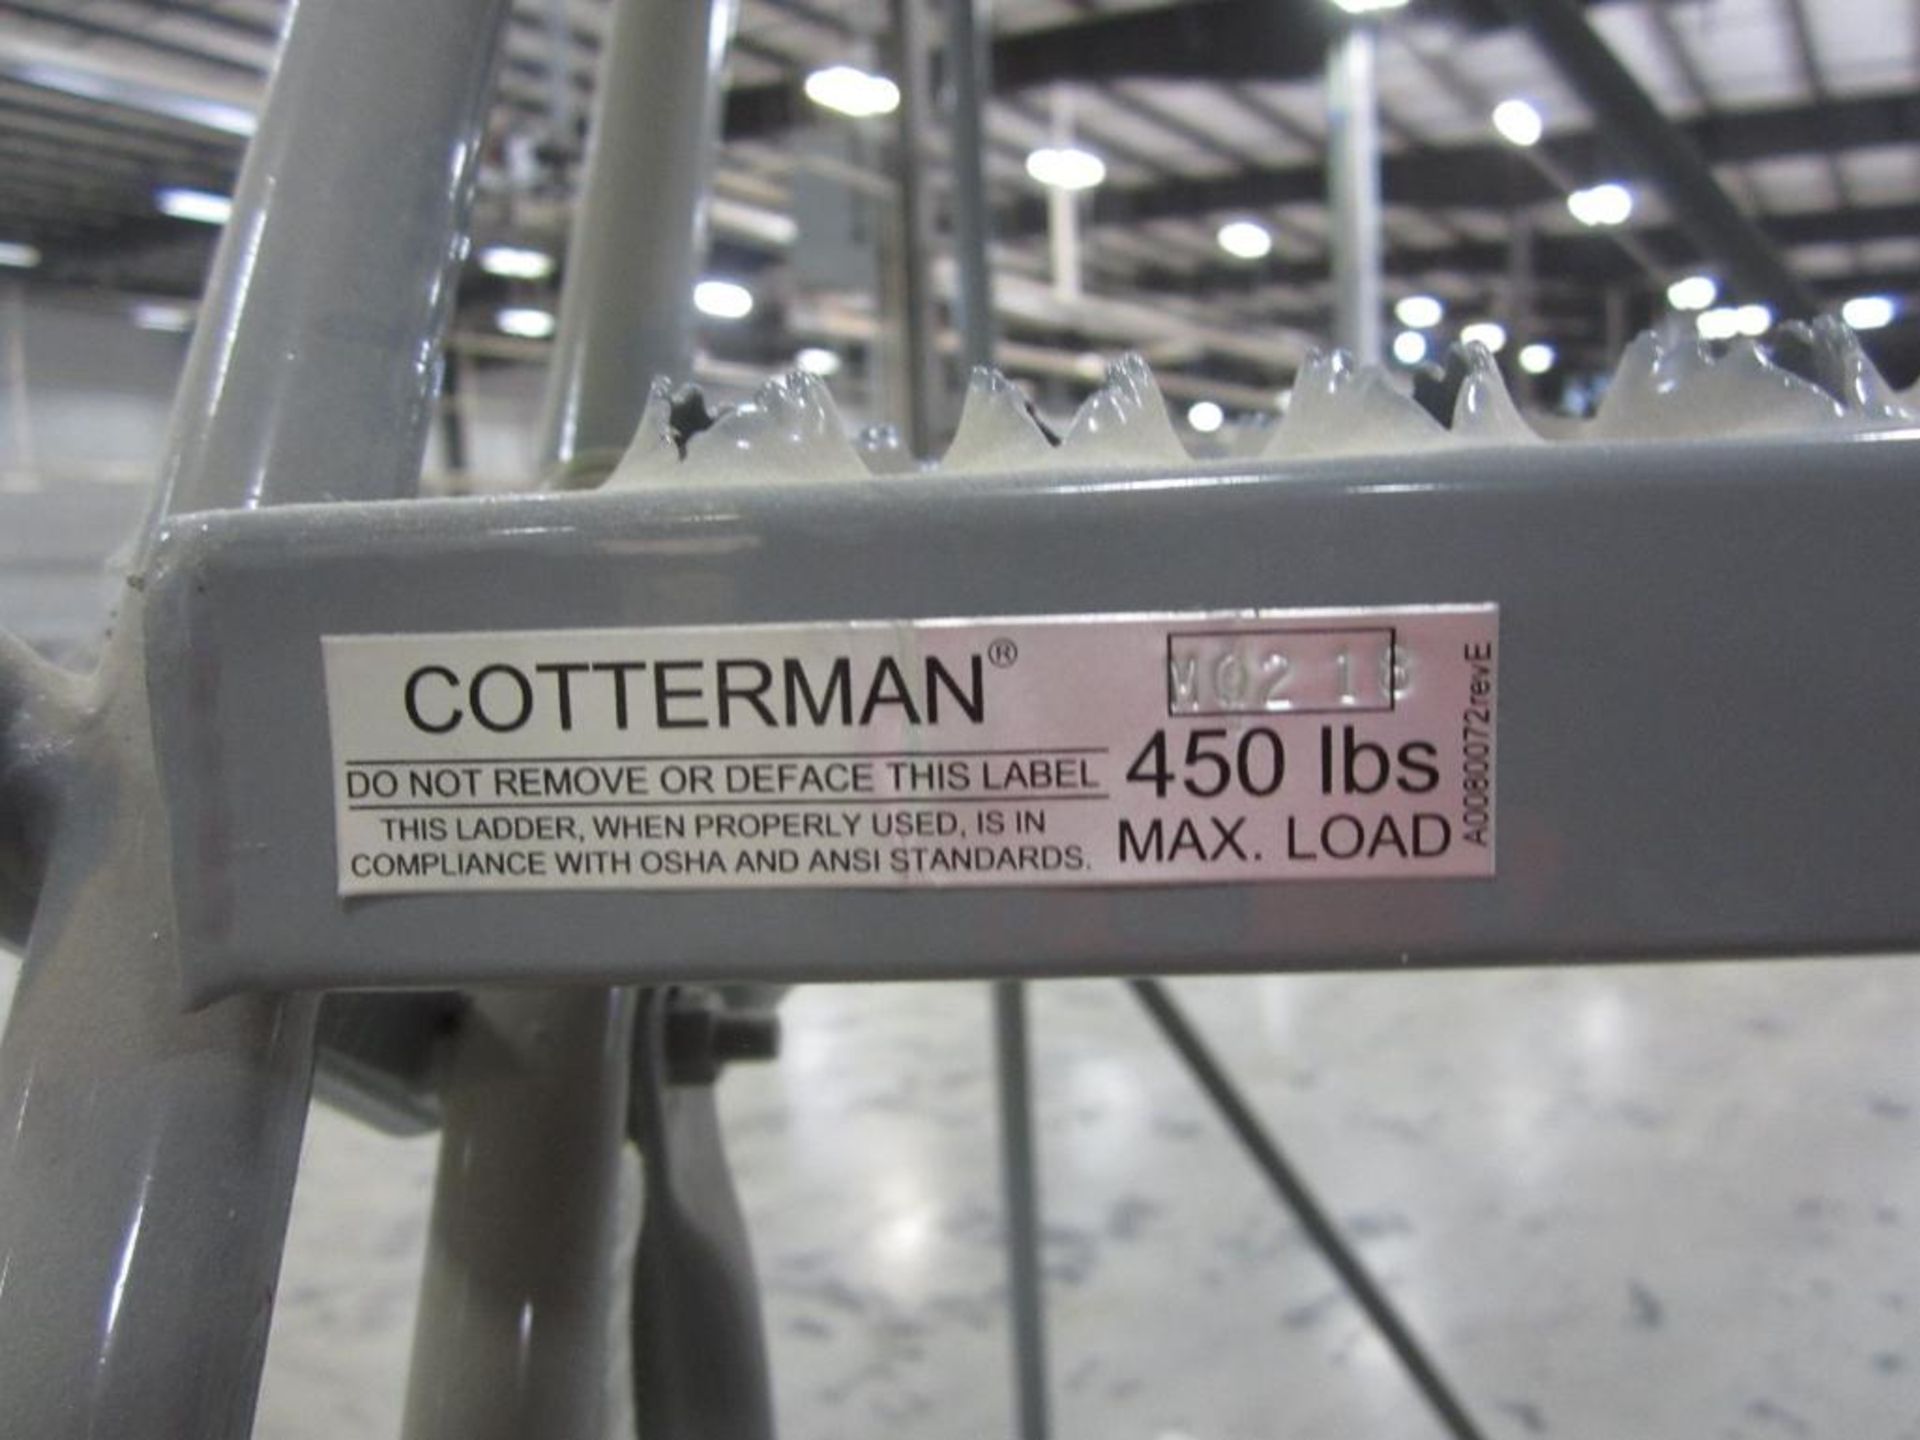 Cotterman ladder - Image 4 of 4